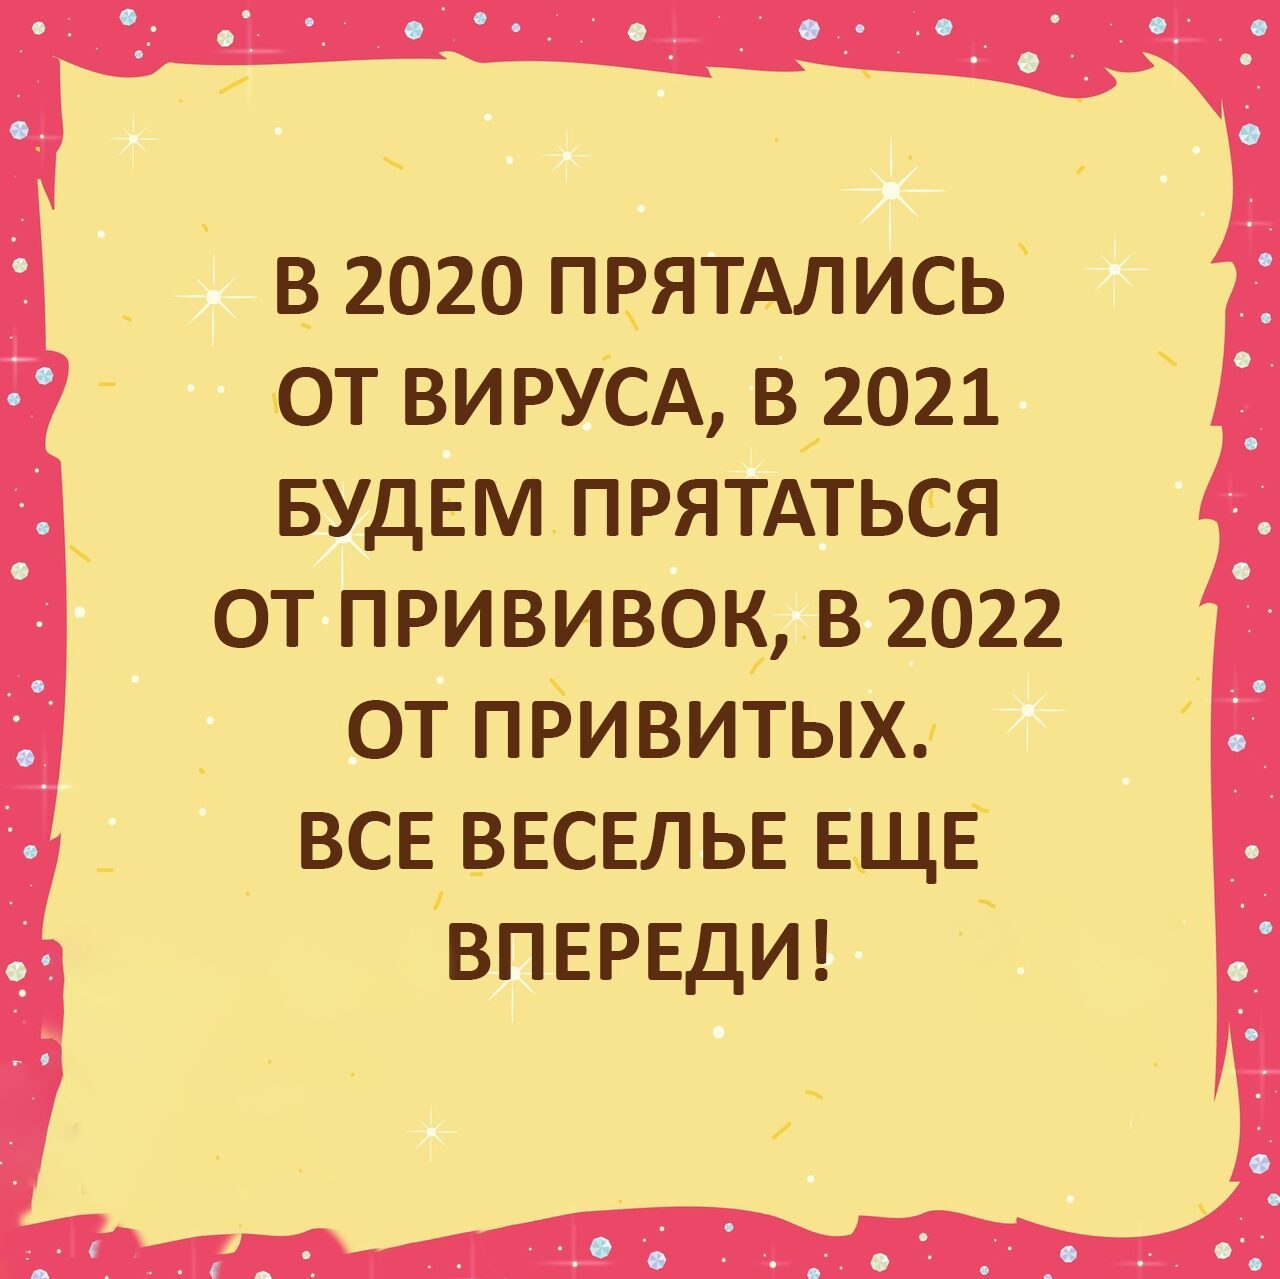  - 20  2021  00:56